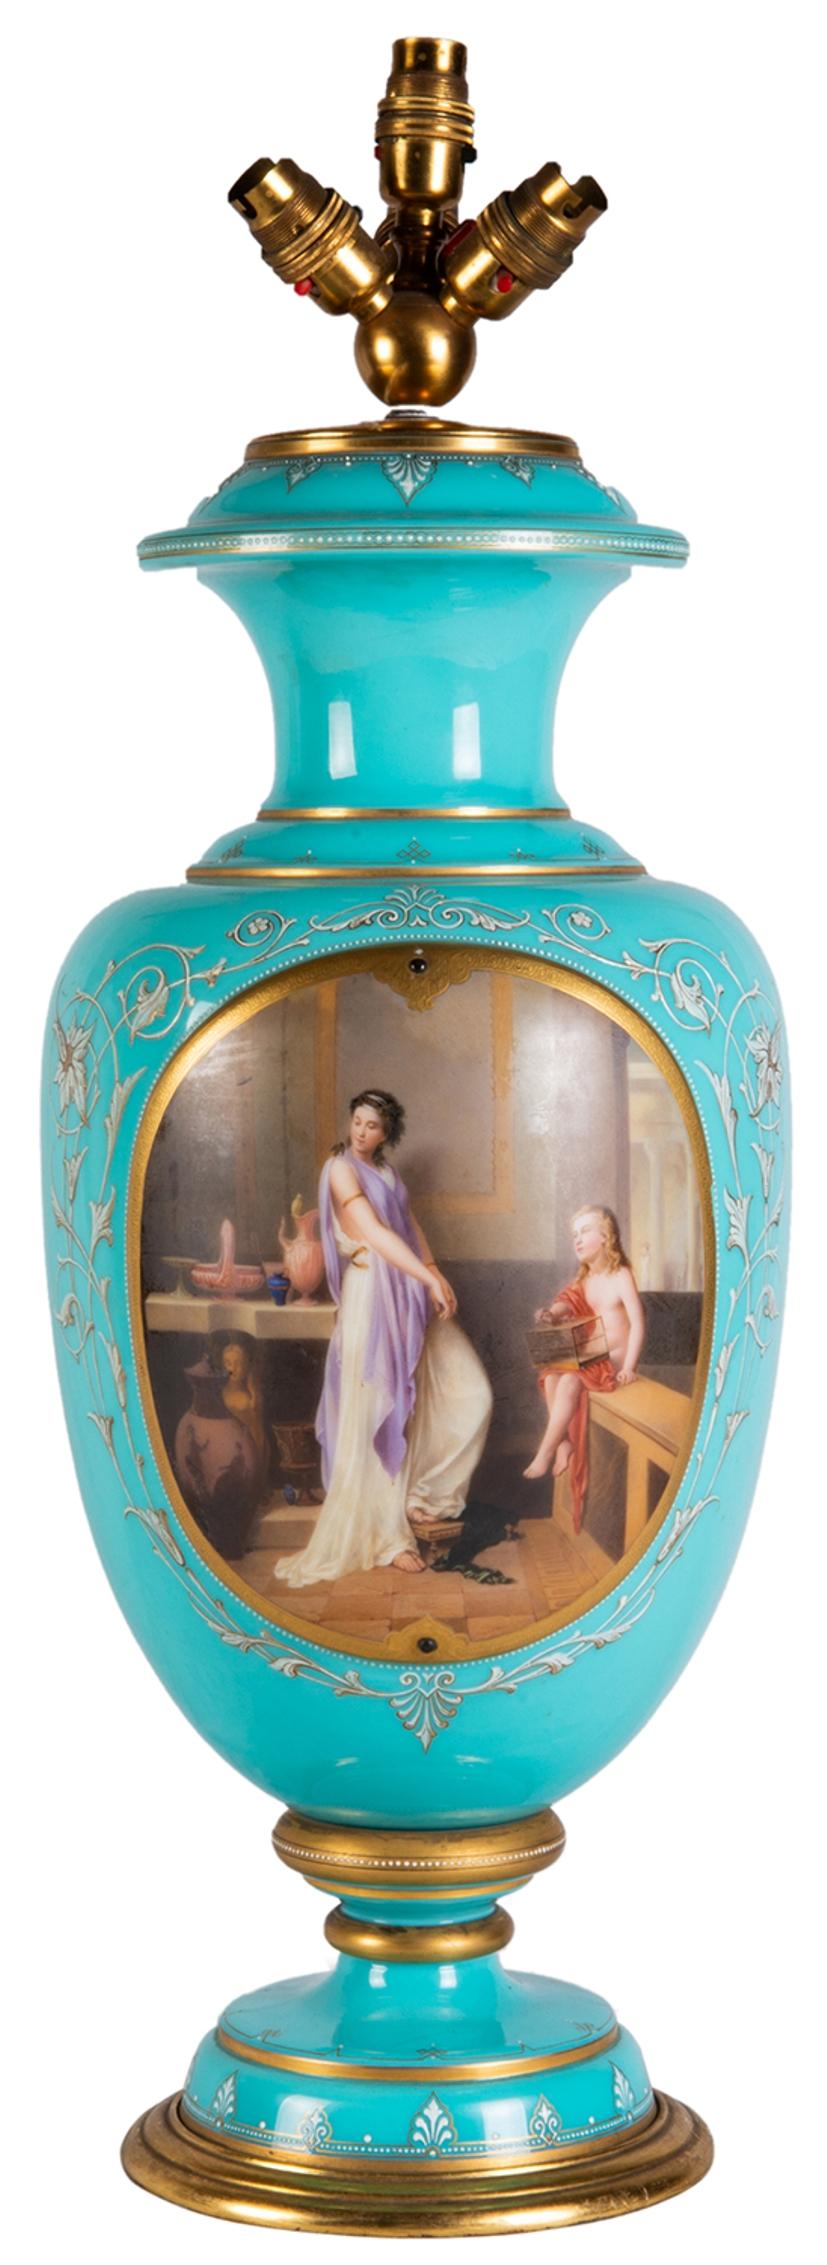 Un vase / lampe en verre de Bohème de très bonne qualité datant de la fin du 19ème siècle, ayant un merveilleux fond turquoise, avec une décoration dorée, un panneau peint en médaillon représentant une jeune fille classique avec un enfant assis